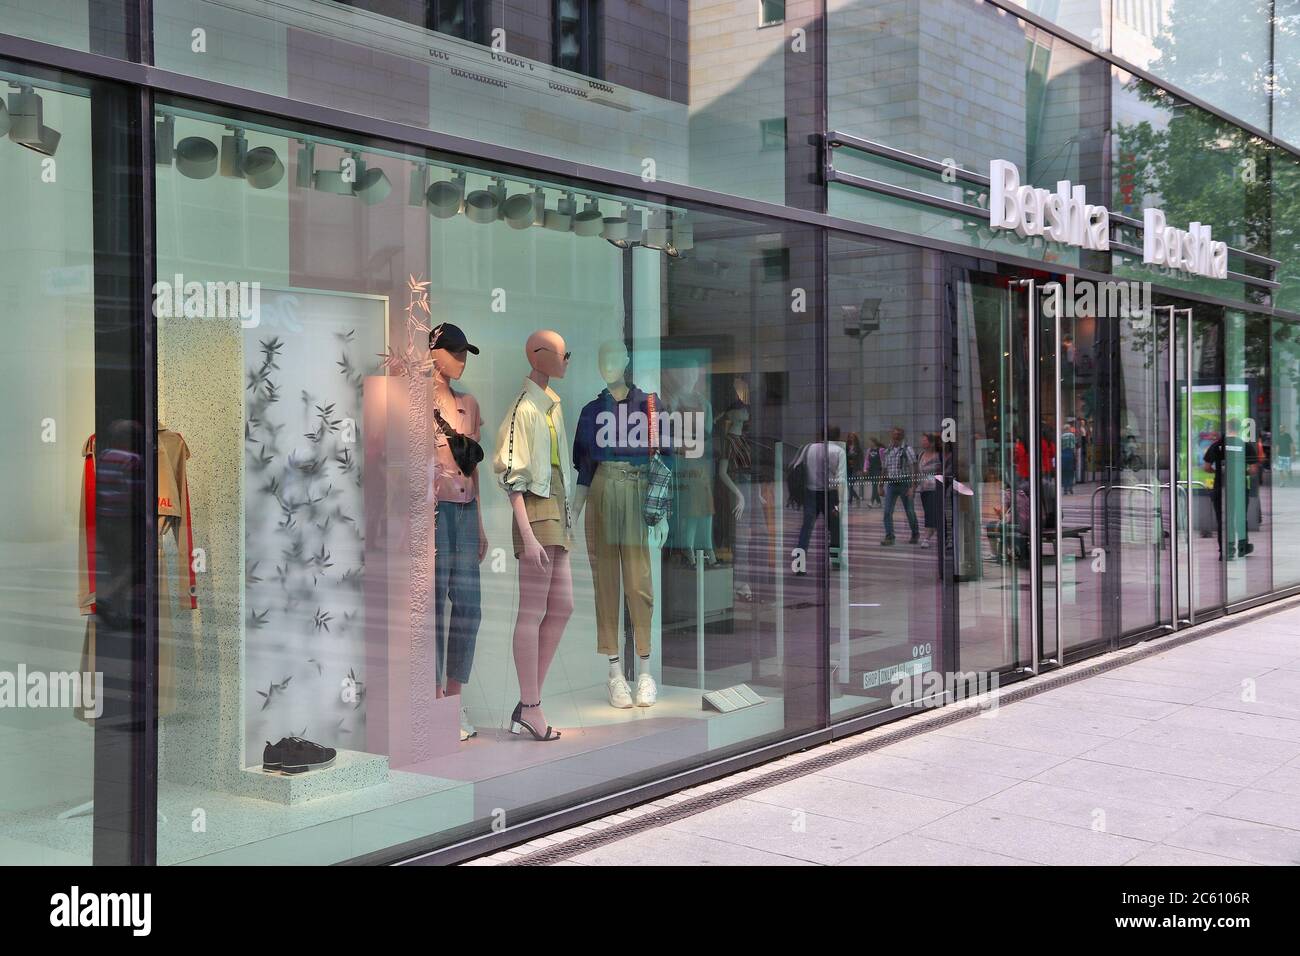 DRESDE, ALLEMAGNE - 10 MAI 2018 : vitrine de la boutique de vêtements Bershka  à Dresde, Allemagne. La marque Bershka fait partie du groupe de mode  Inditex Photo Stock - Alamy